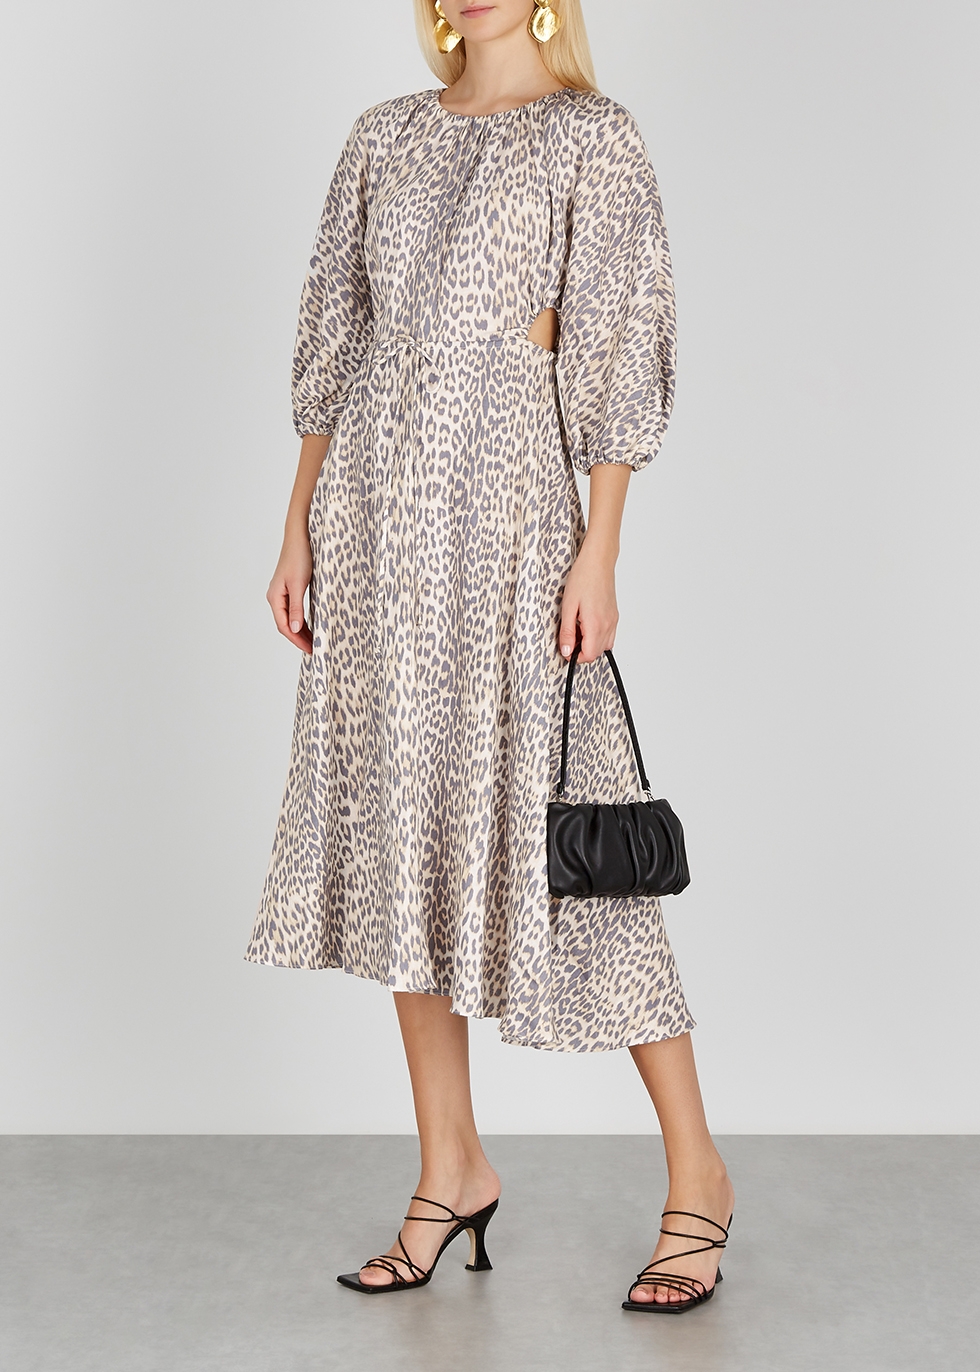 bec and bridge leopard print dress